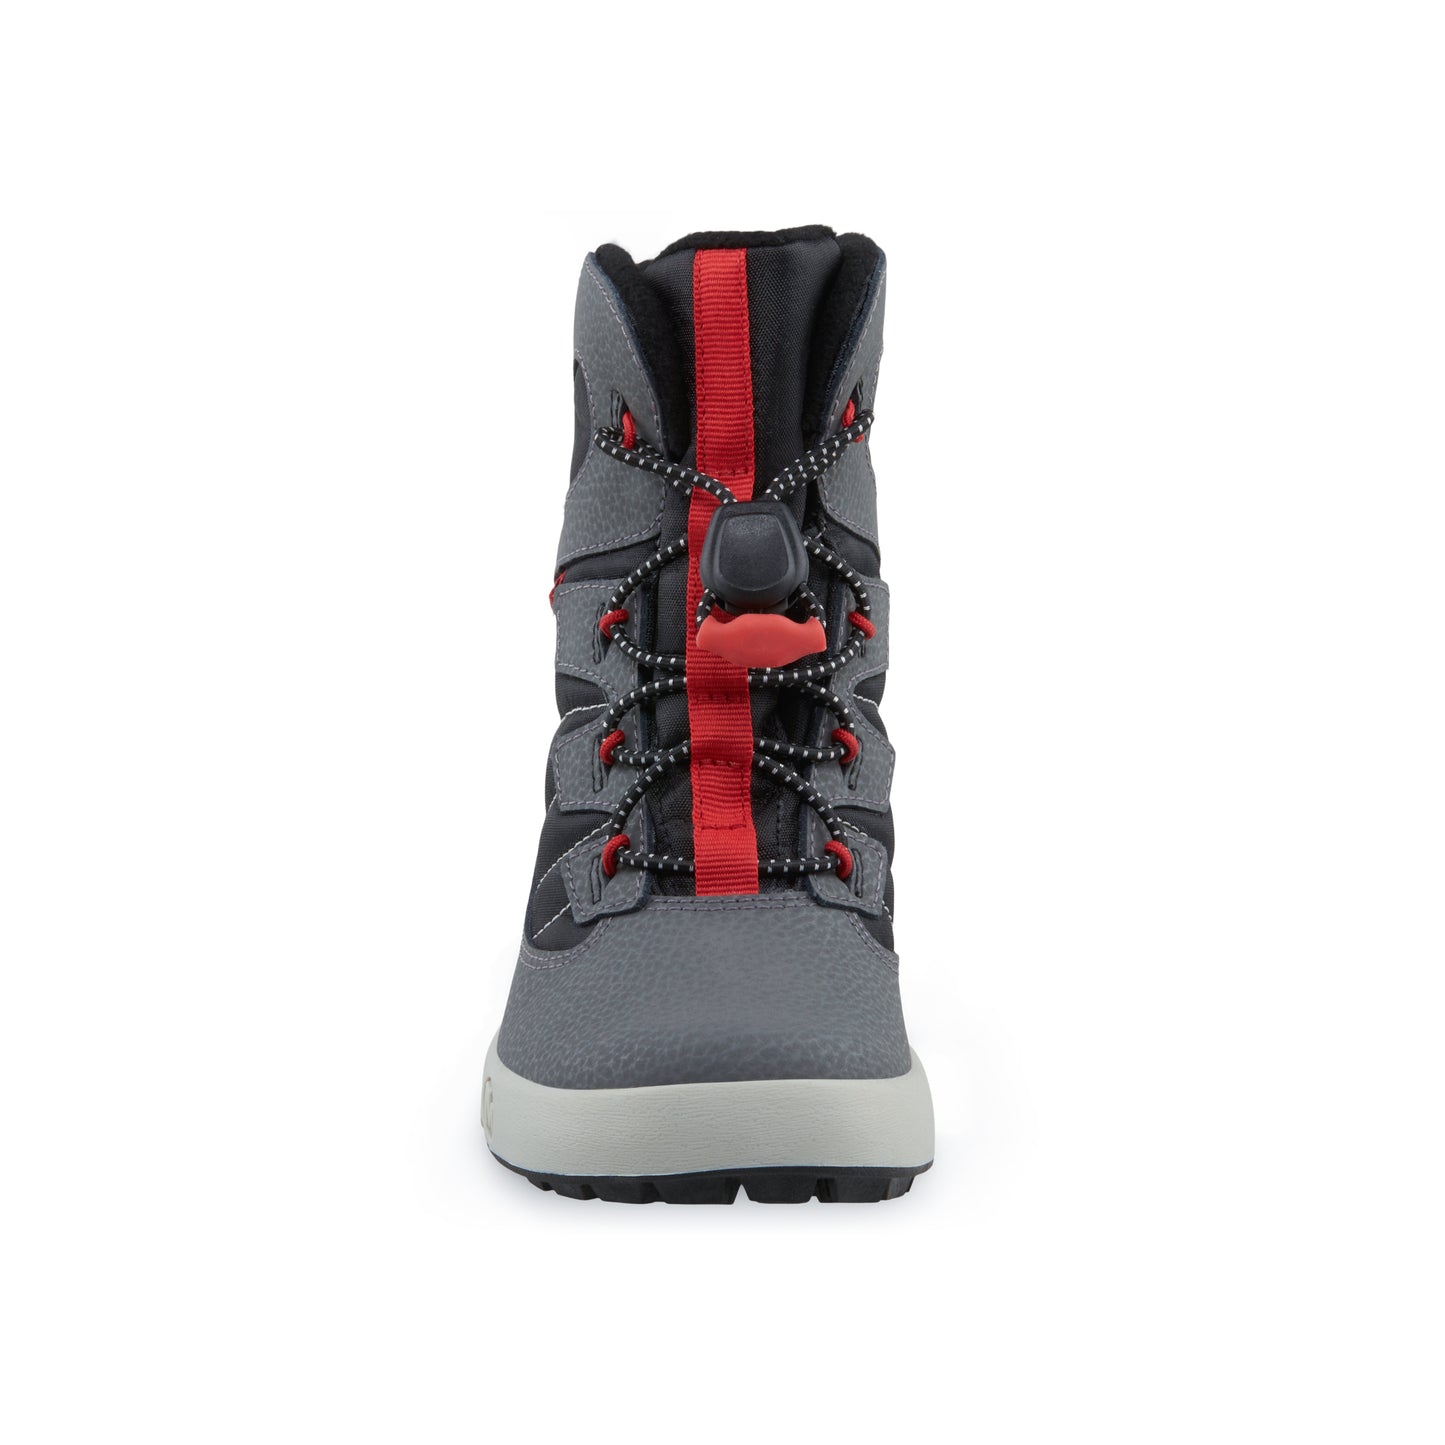 snow-bank-40-waterproof-boot-bigkid-grey-black-red__Grey/Black/Red_5